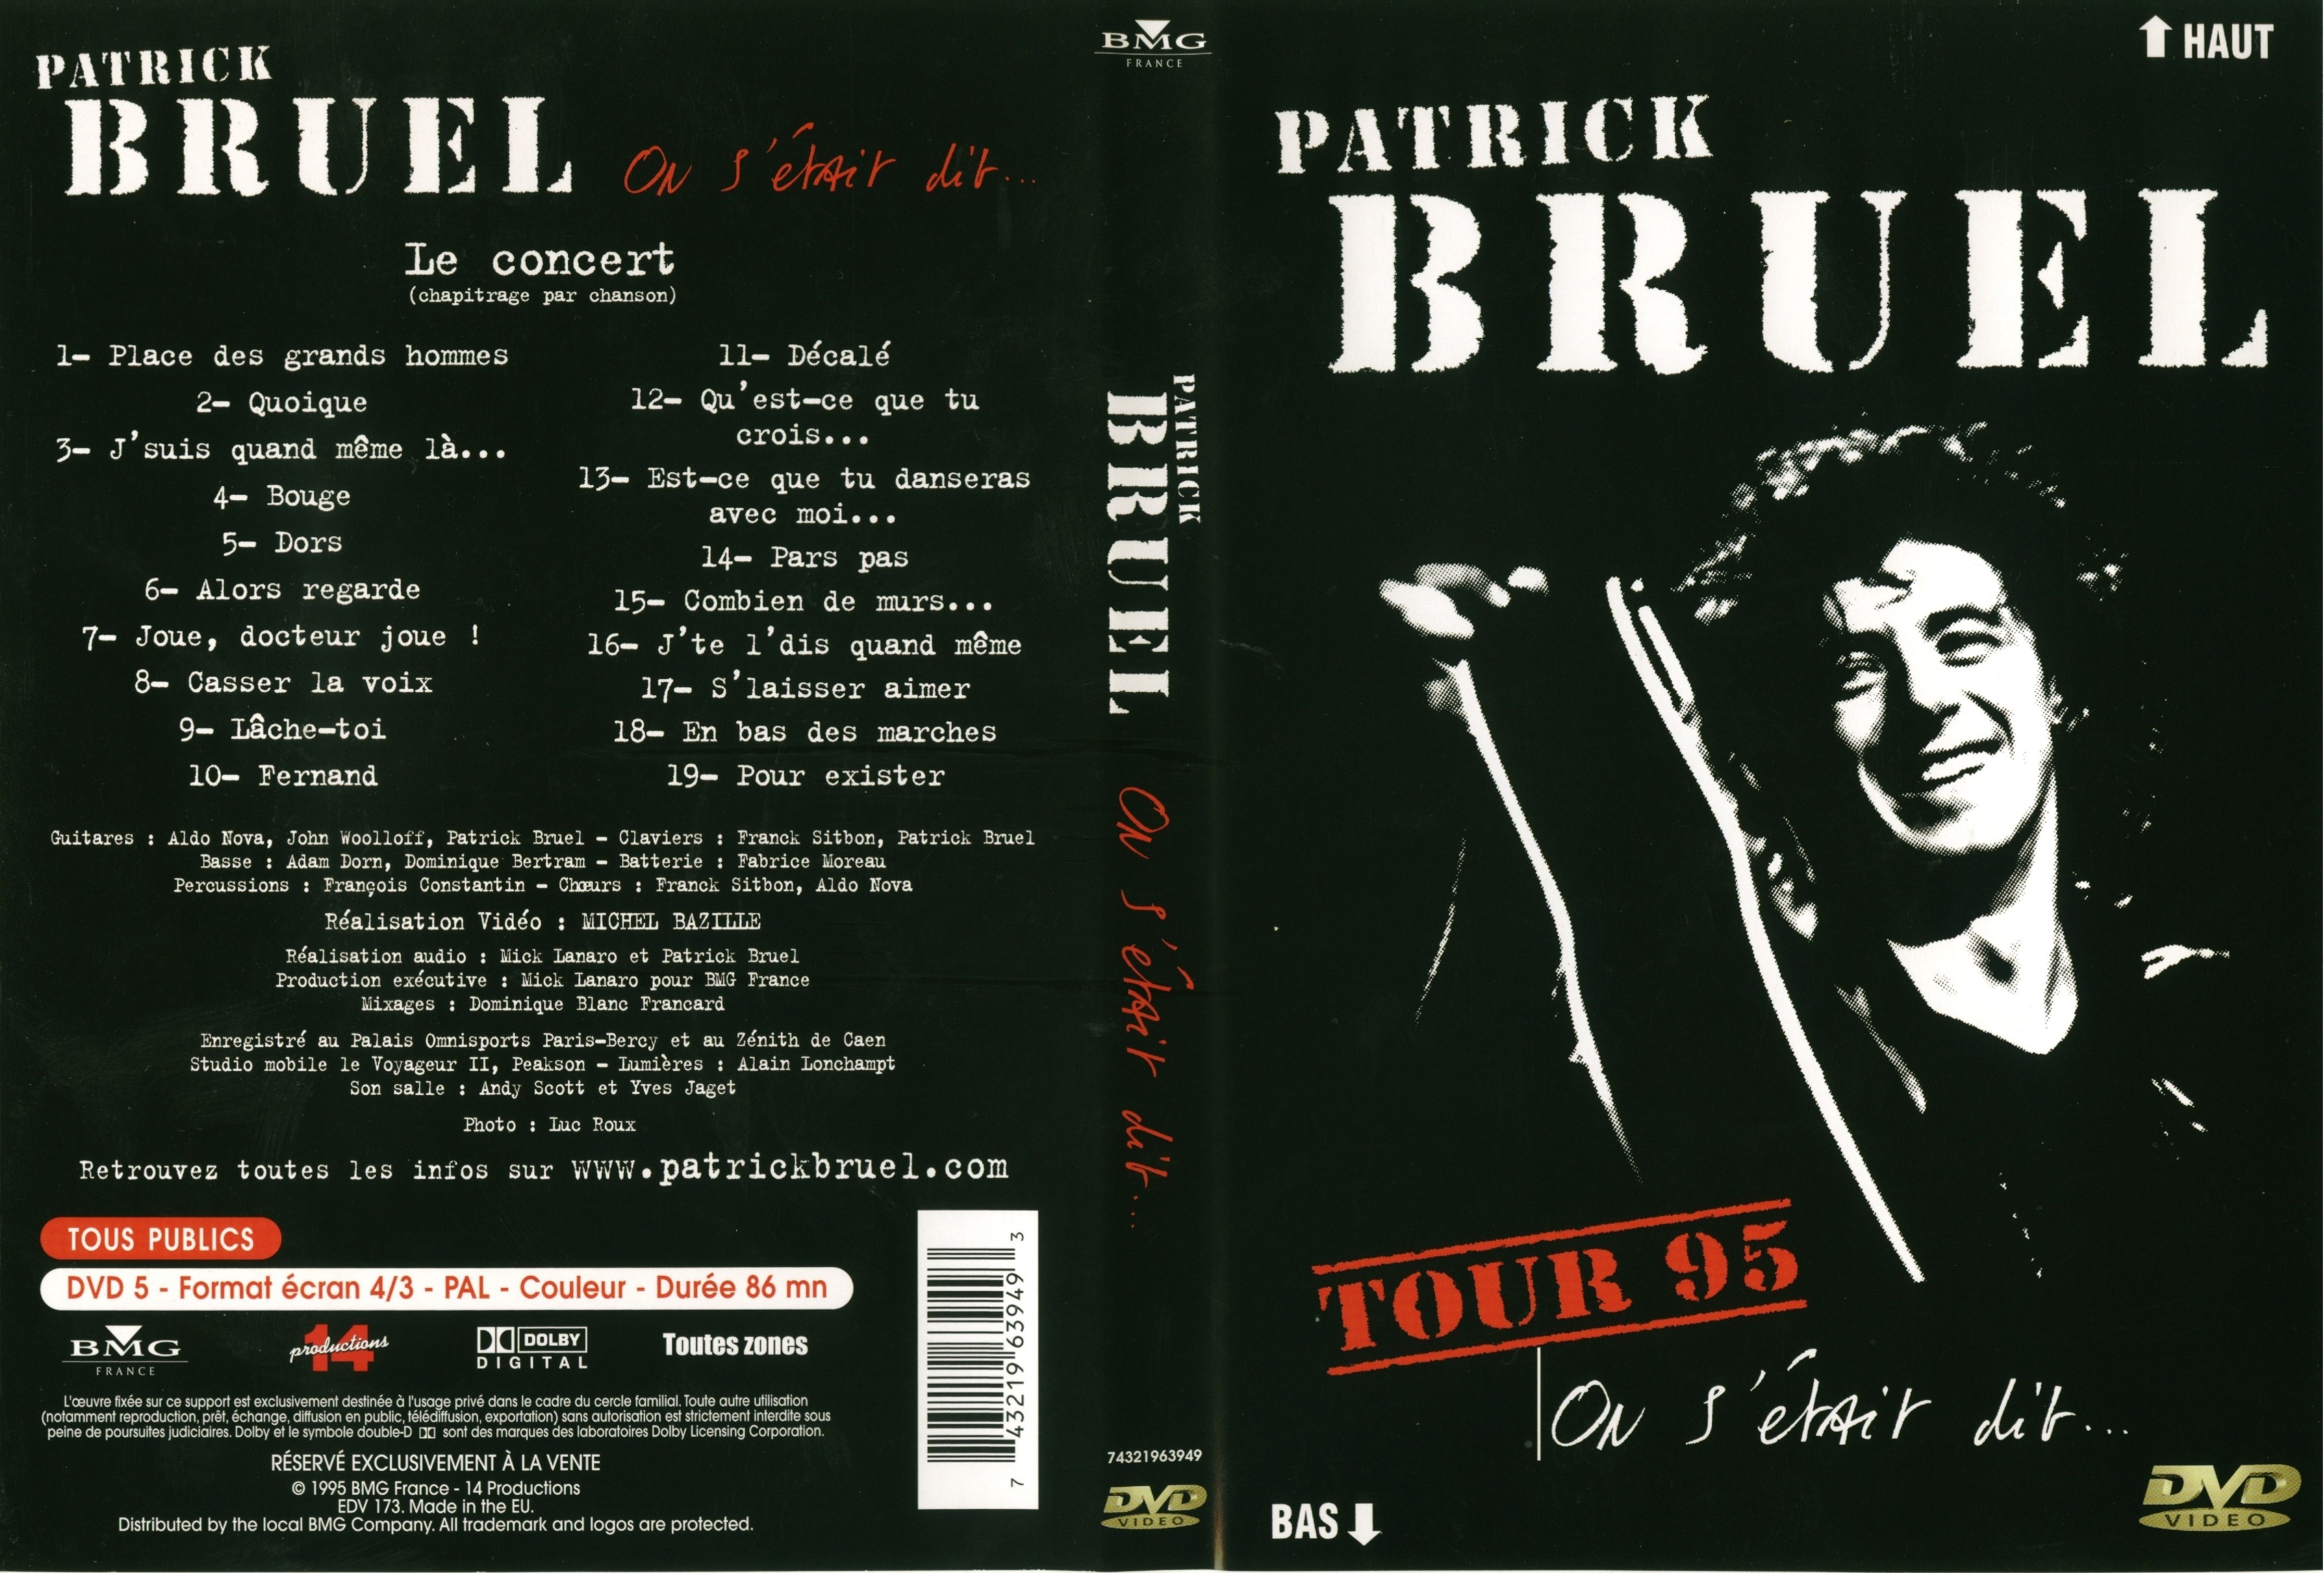 Jaquette DVD Patrick Bruel tour 95 on s